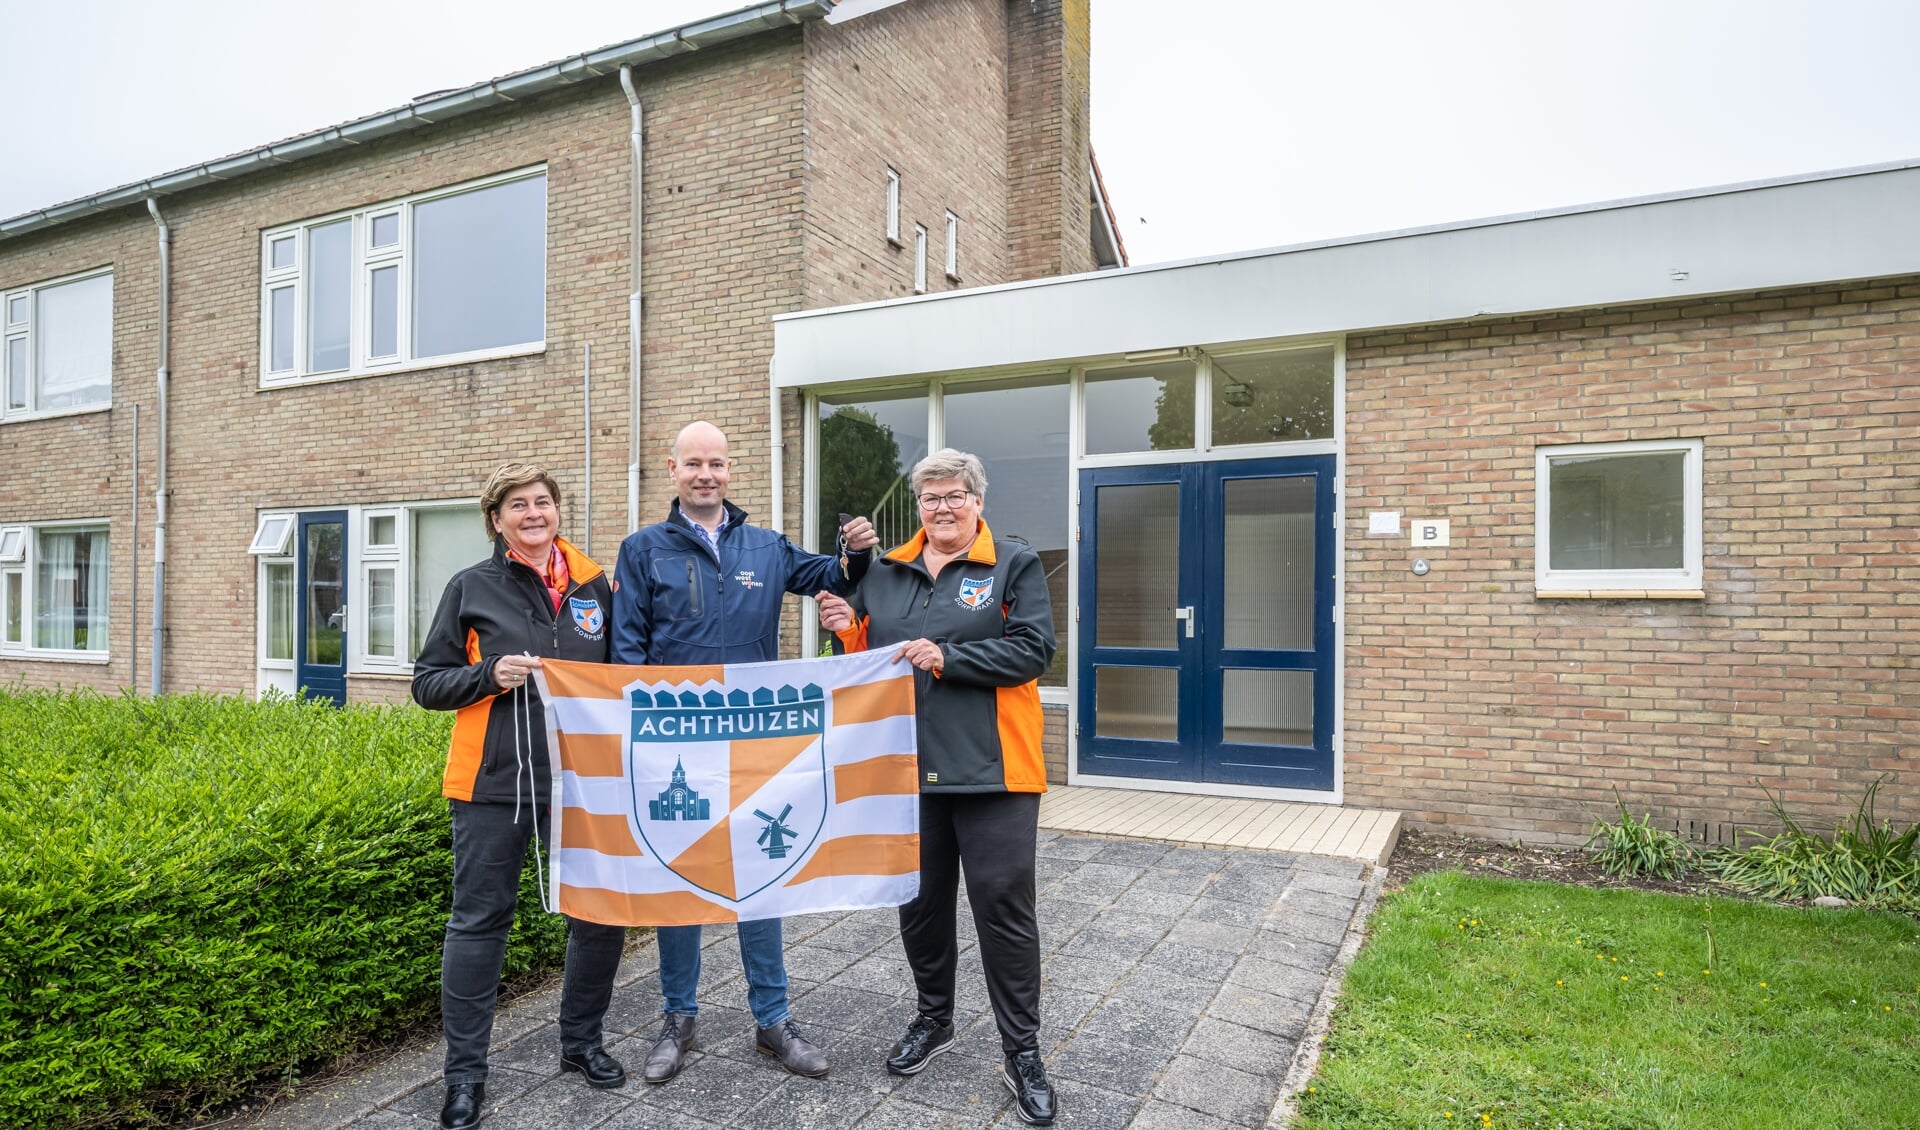 Arjan Mouthaan, Woonconsulent Oost West Wonen overhandigt de sleutel aan Jacqueline Lavooy en Manda de Vos van de Dorpsraad Achthuizen. (Foto: Wim van Vossen)